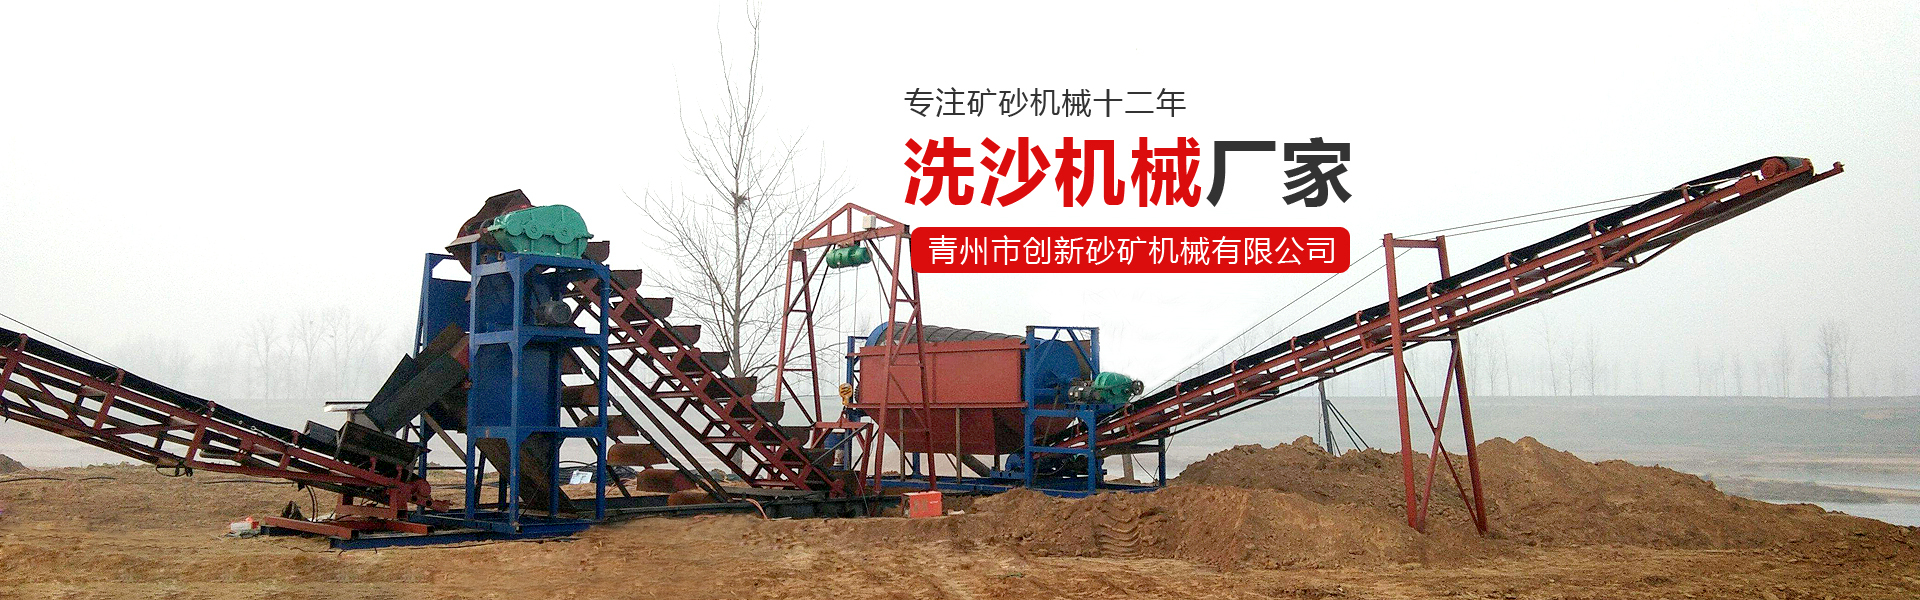 青州市創新砂礦機械有限公司